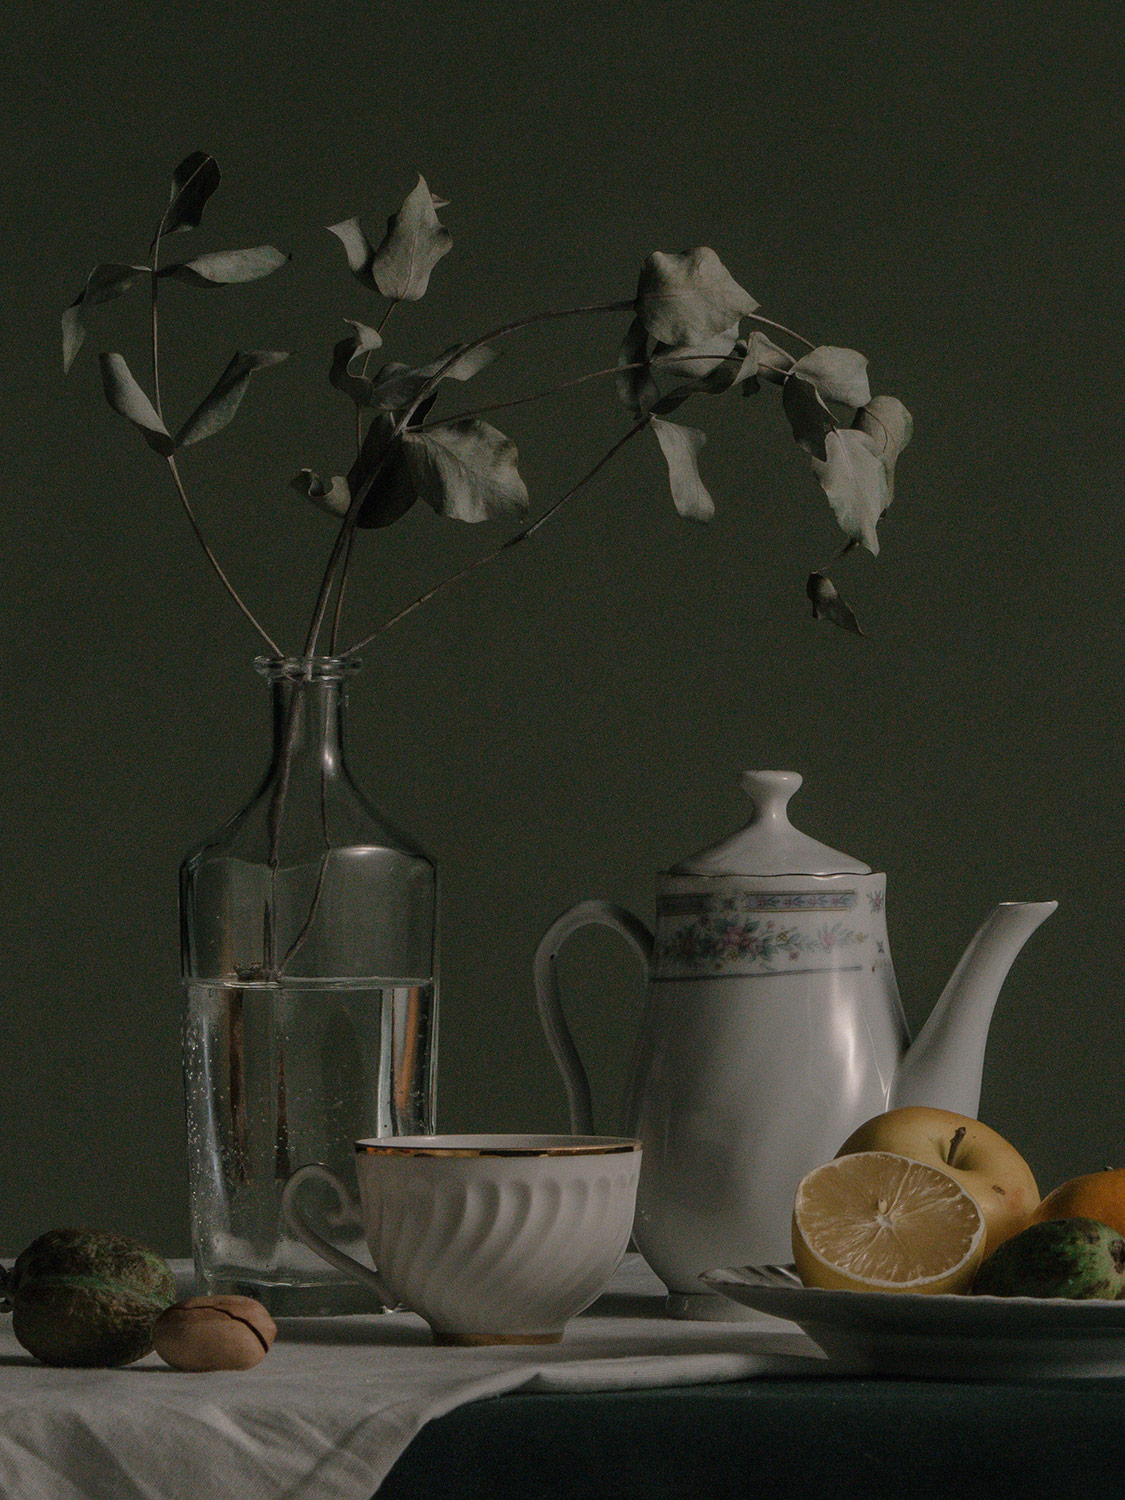 Bone china teapot set on table